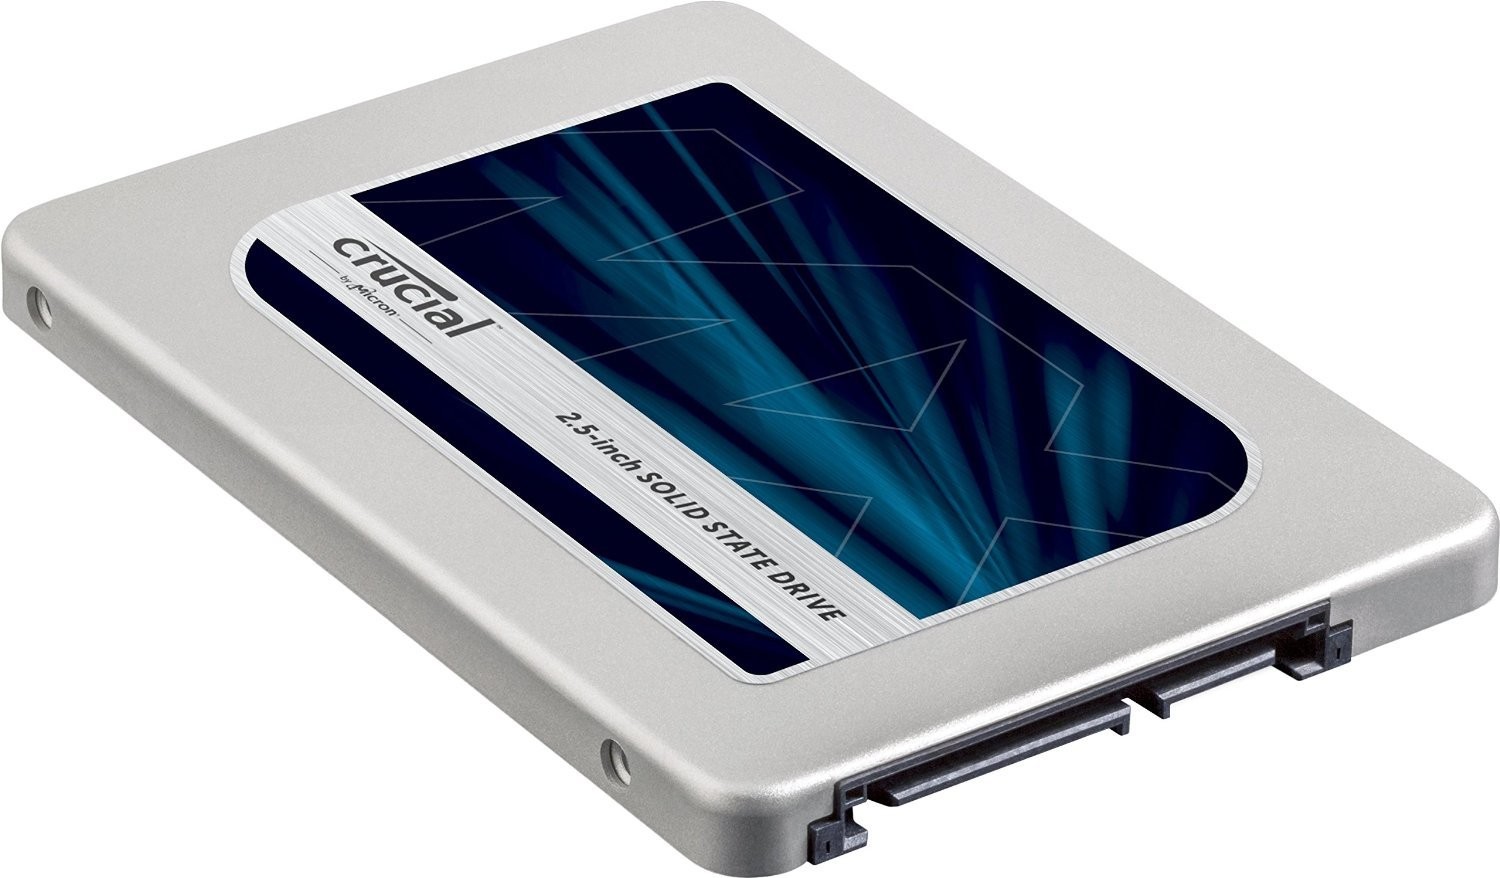 Immagine pubblicata in relazione al seguente contenuto: Crucial introduce il drive a stato solido SSD MX300 750GB con 3D NAND | Nome immagine: news24452_Crucial-SSD-MX300-750GB_1.jpg